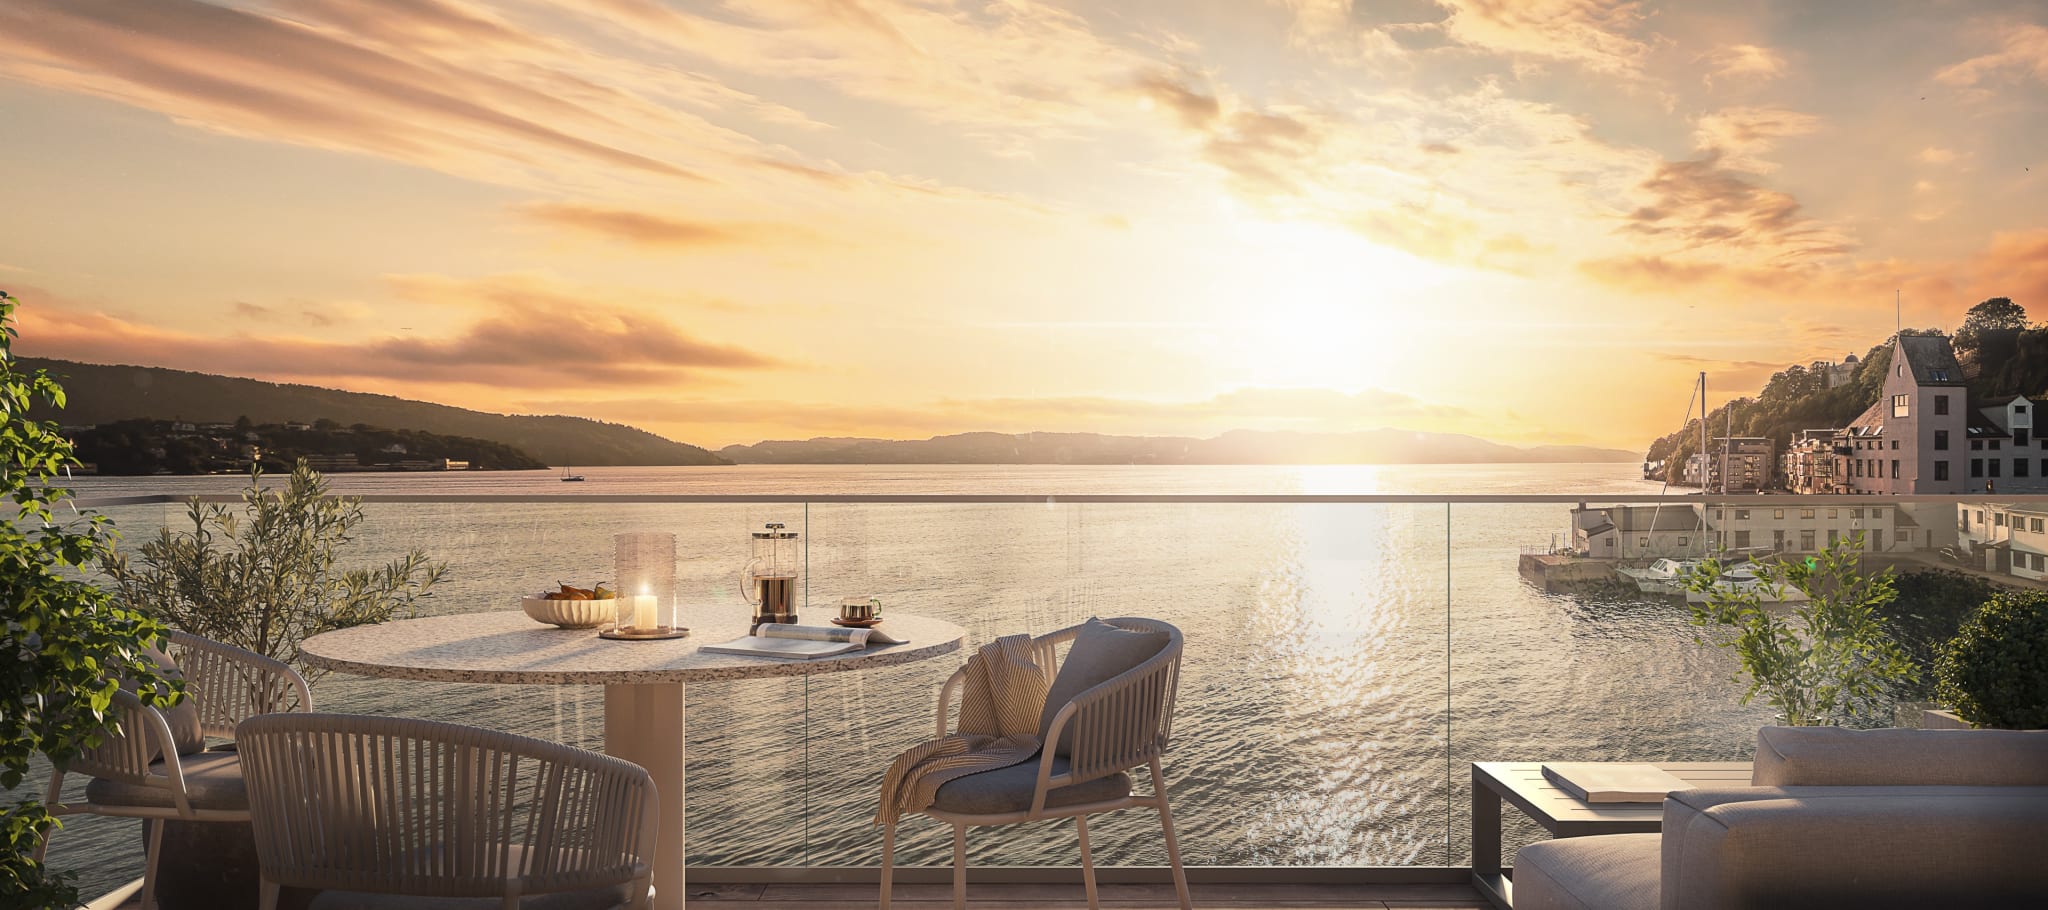 Sjøhusene får store vindusflater og uteplasser med en fantastisk utsikt ut mot Byfjorden